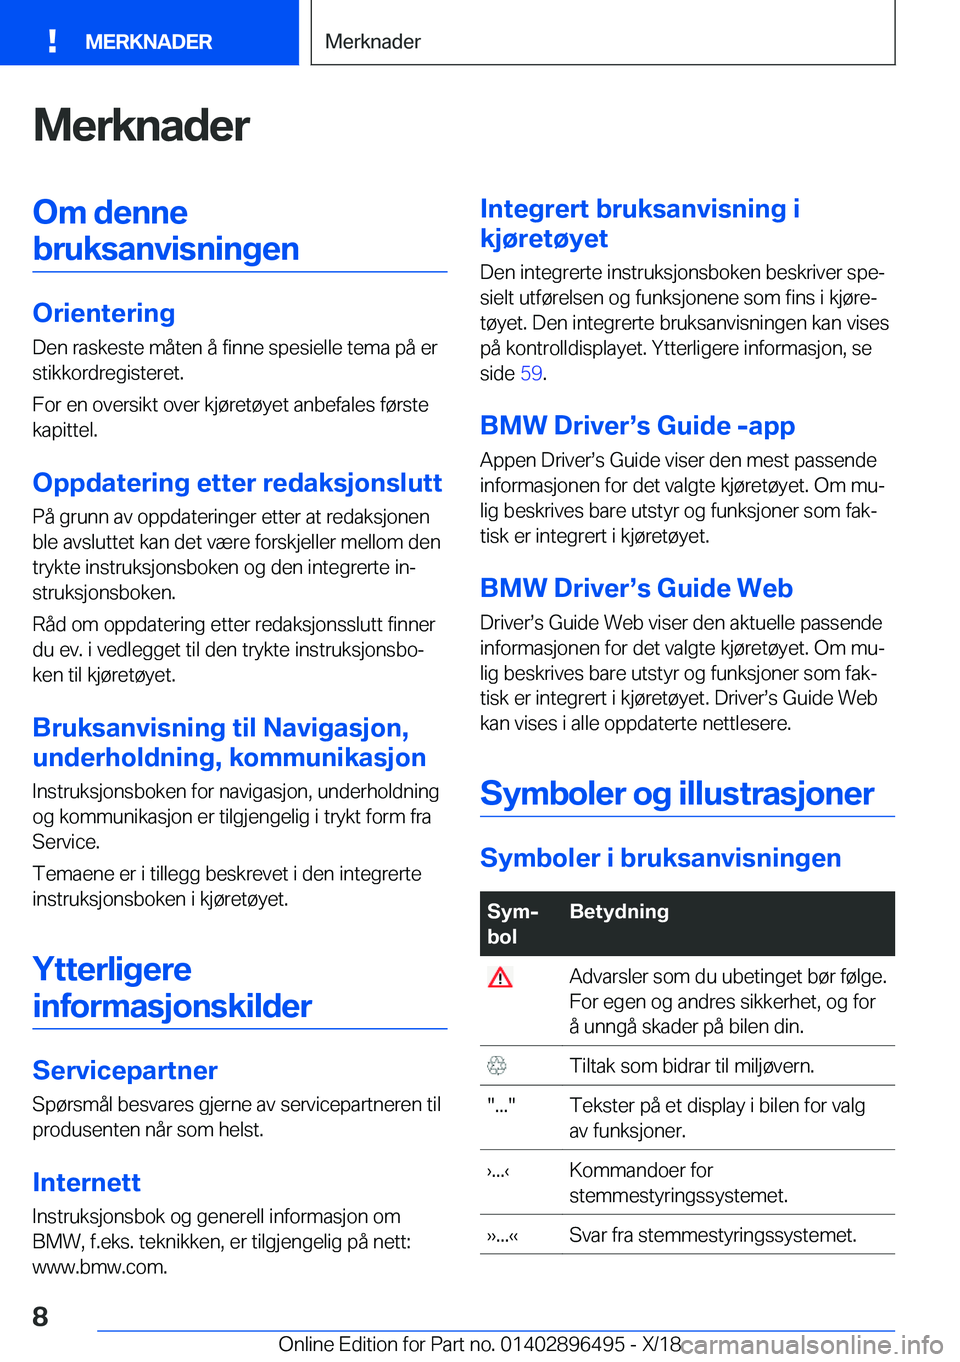 BMW X1 2019  InstruksjonsbØker (in Norwegian) �M�e�r�k�n�a�d�e�r�O�m��d�e�n�n�e�b�r�u�k�s�a�n�v�i�s�n�i�n�g�e�n
�O�r�i�e�n�t�e�r�i�n�g
�D�e�n��r�a�s�k�e�s�t�e��m�å�t�e�n��å��f�i�n�n�e��s�p�e�s�i�e�l�l�e��t�e�m�a��p�å��e�r �s�t�i�k�k�o